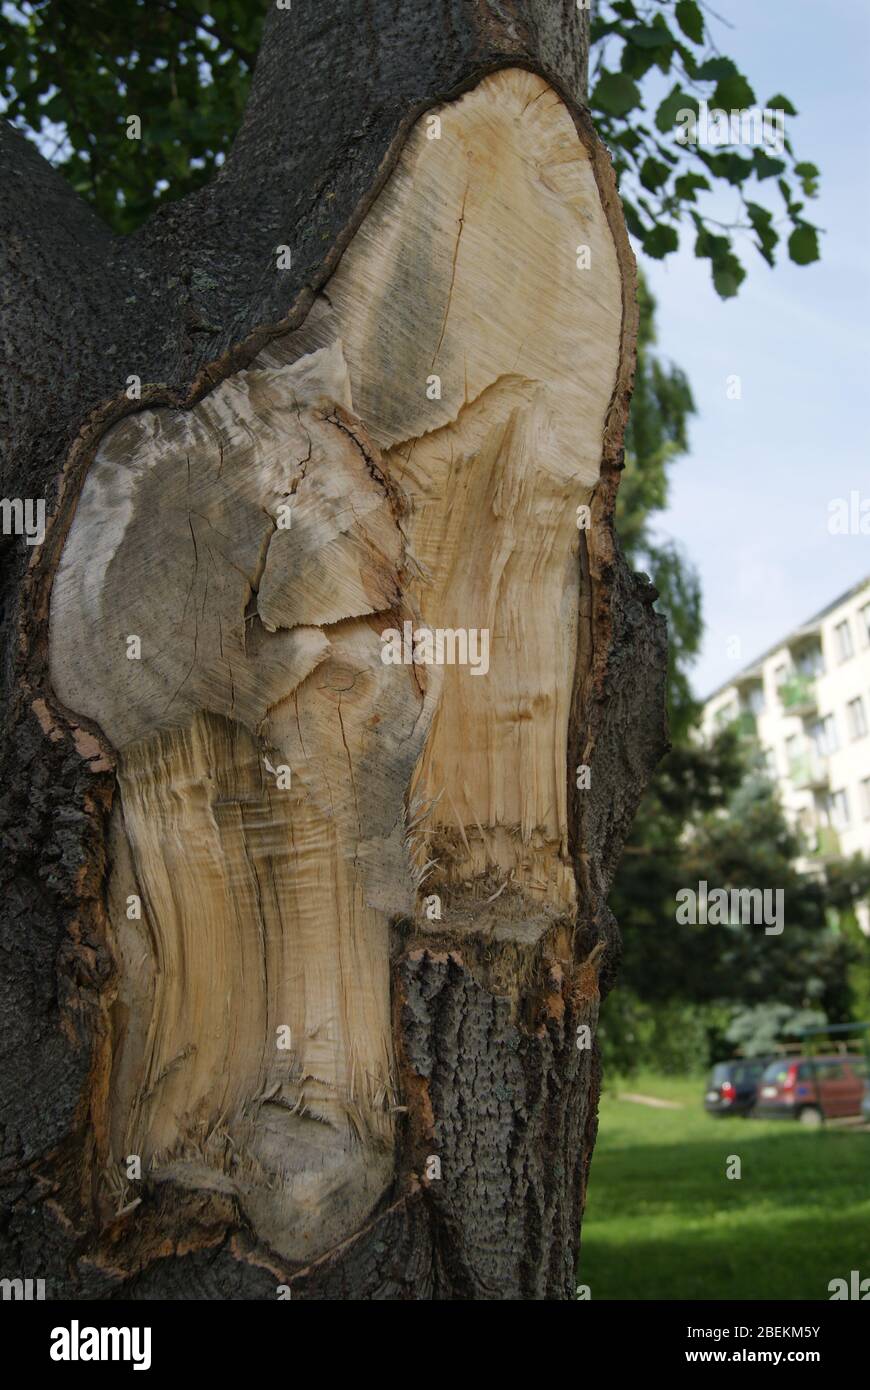 Un arbre en Pologne avec une branche découpée Foto Stock